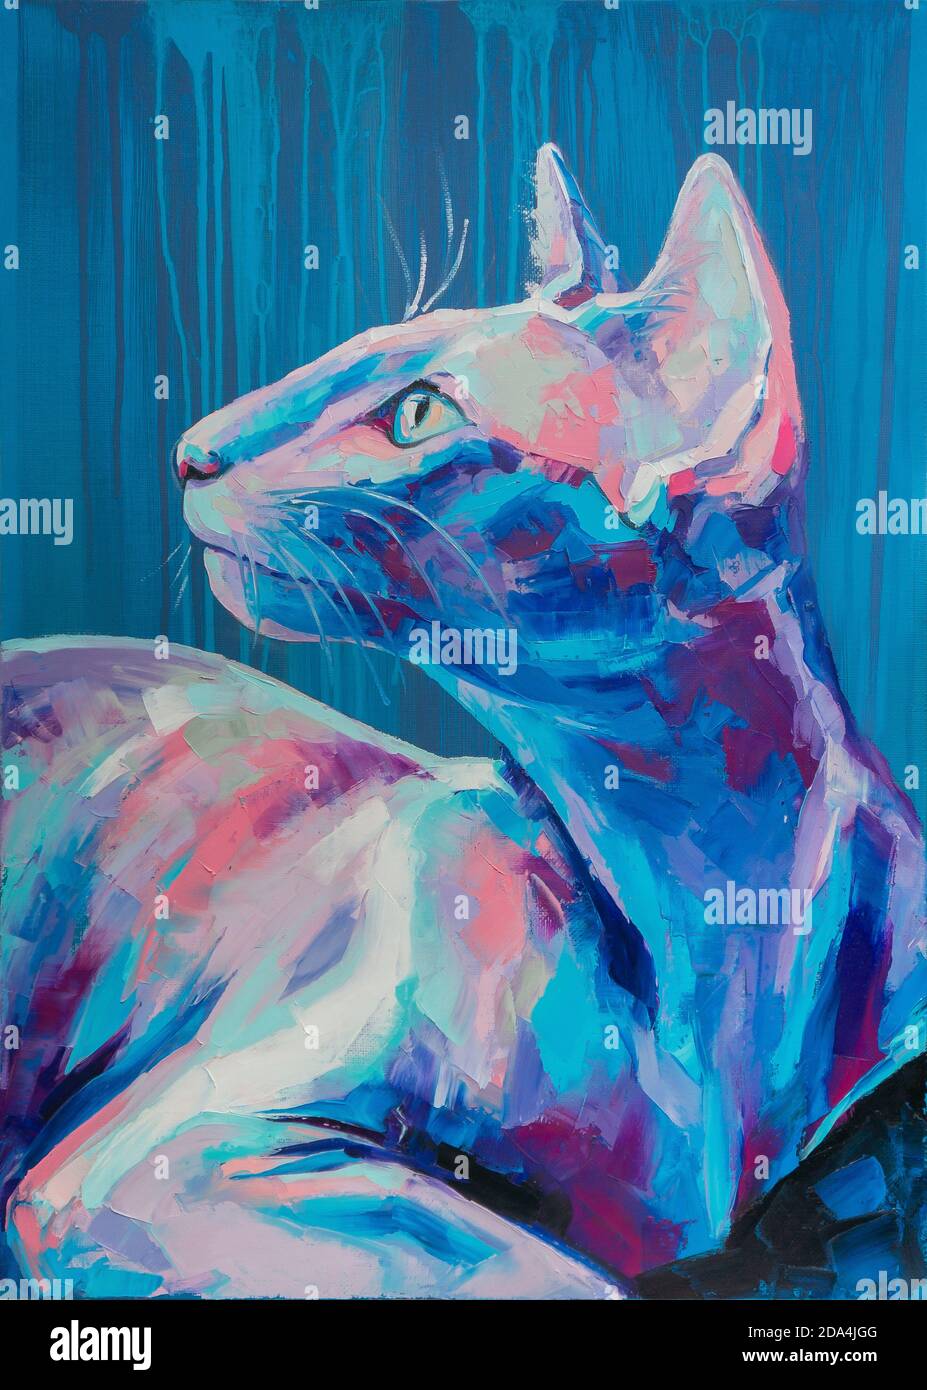 Huile de chat portrait peinture dans des tons de lune. Peinture abstraite conceptuelle d'un museau de chat. Gros plan d'une peinture à l'huile et couteau à palette sur toile. Banque D'Images